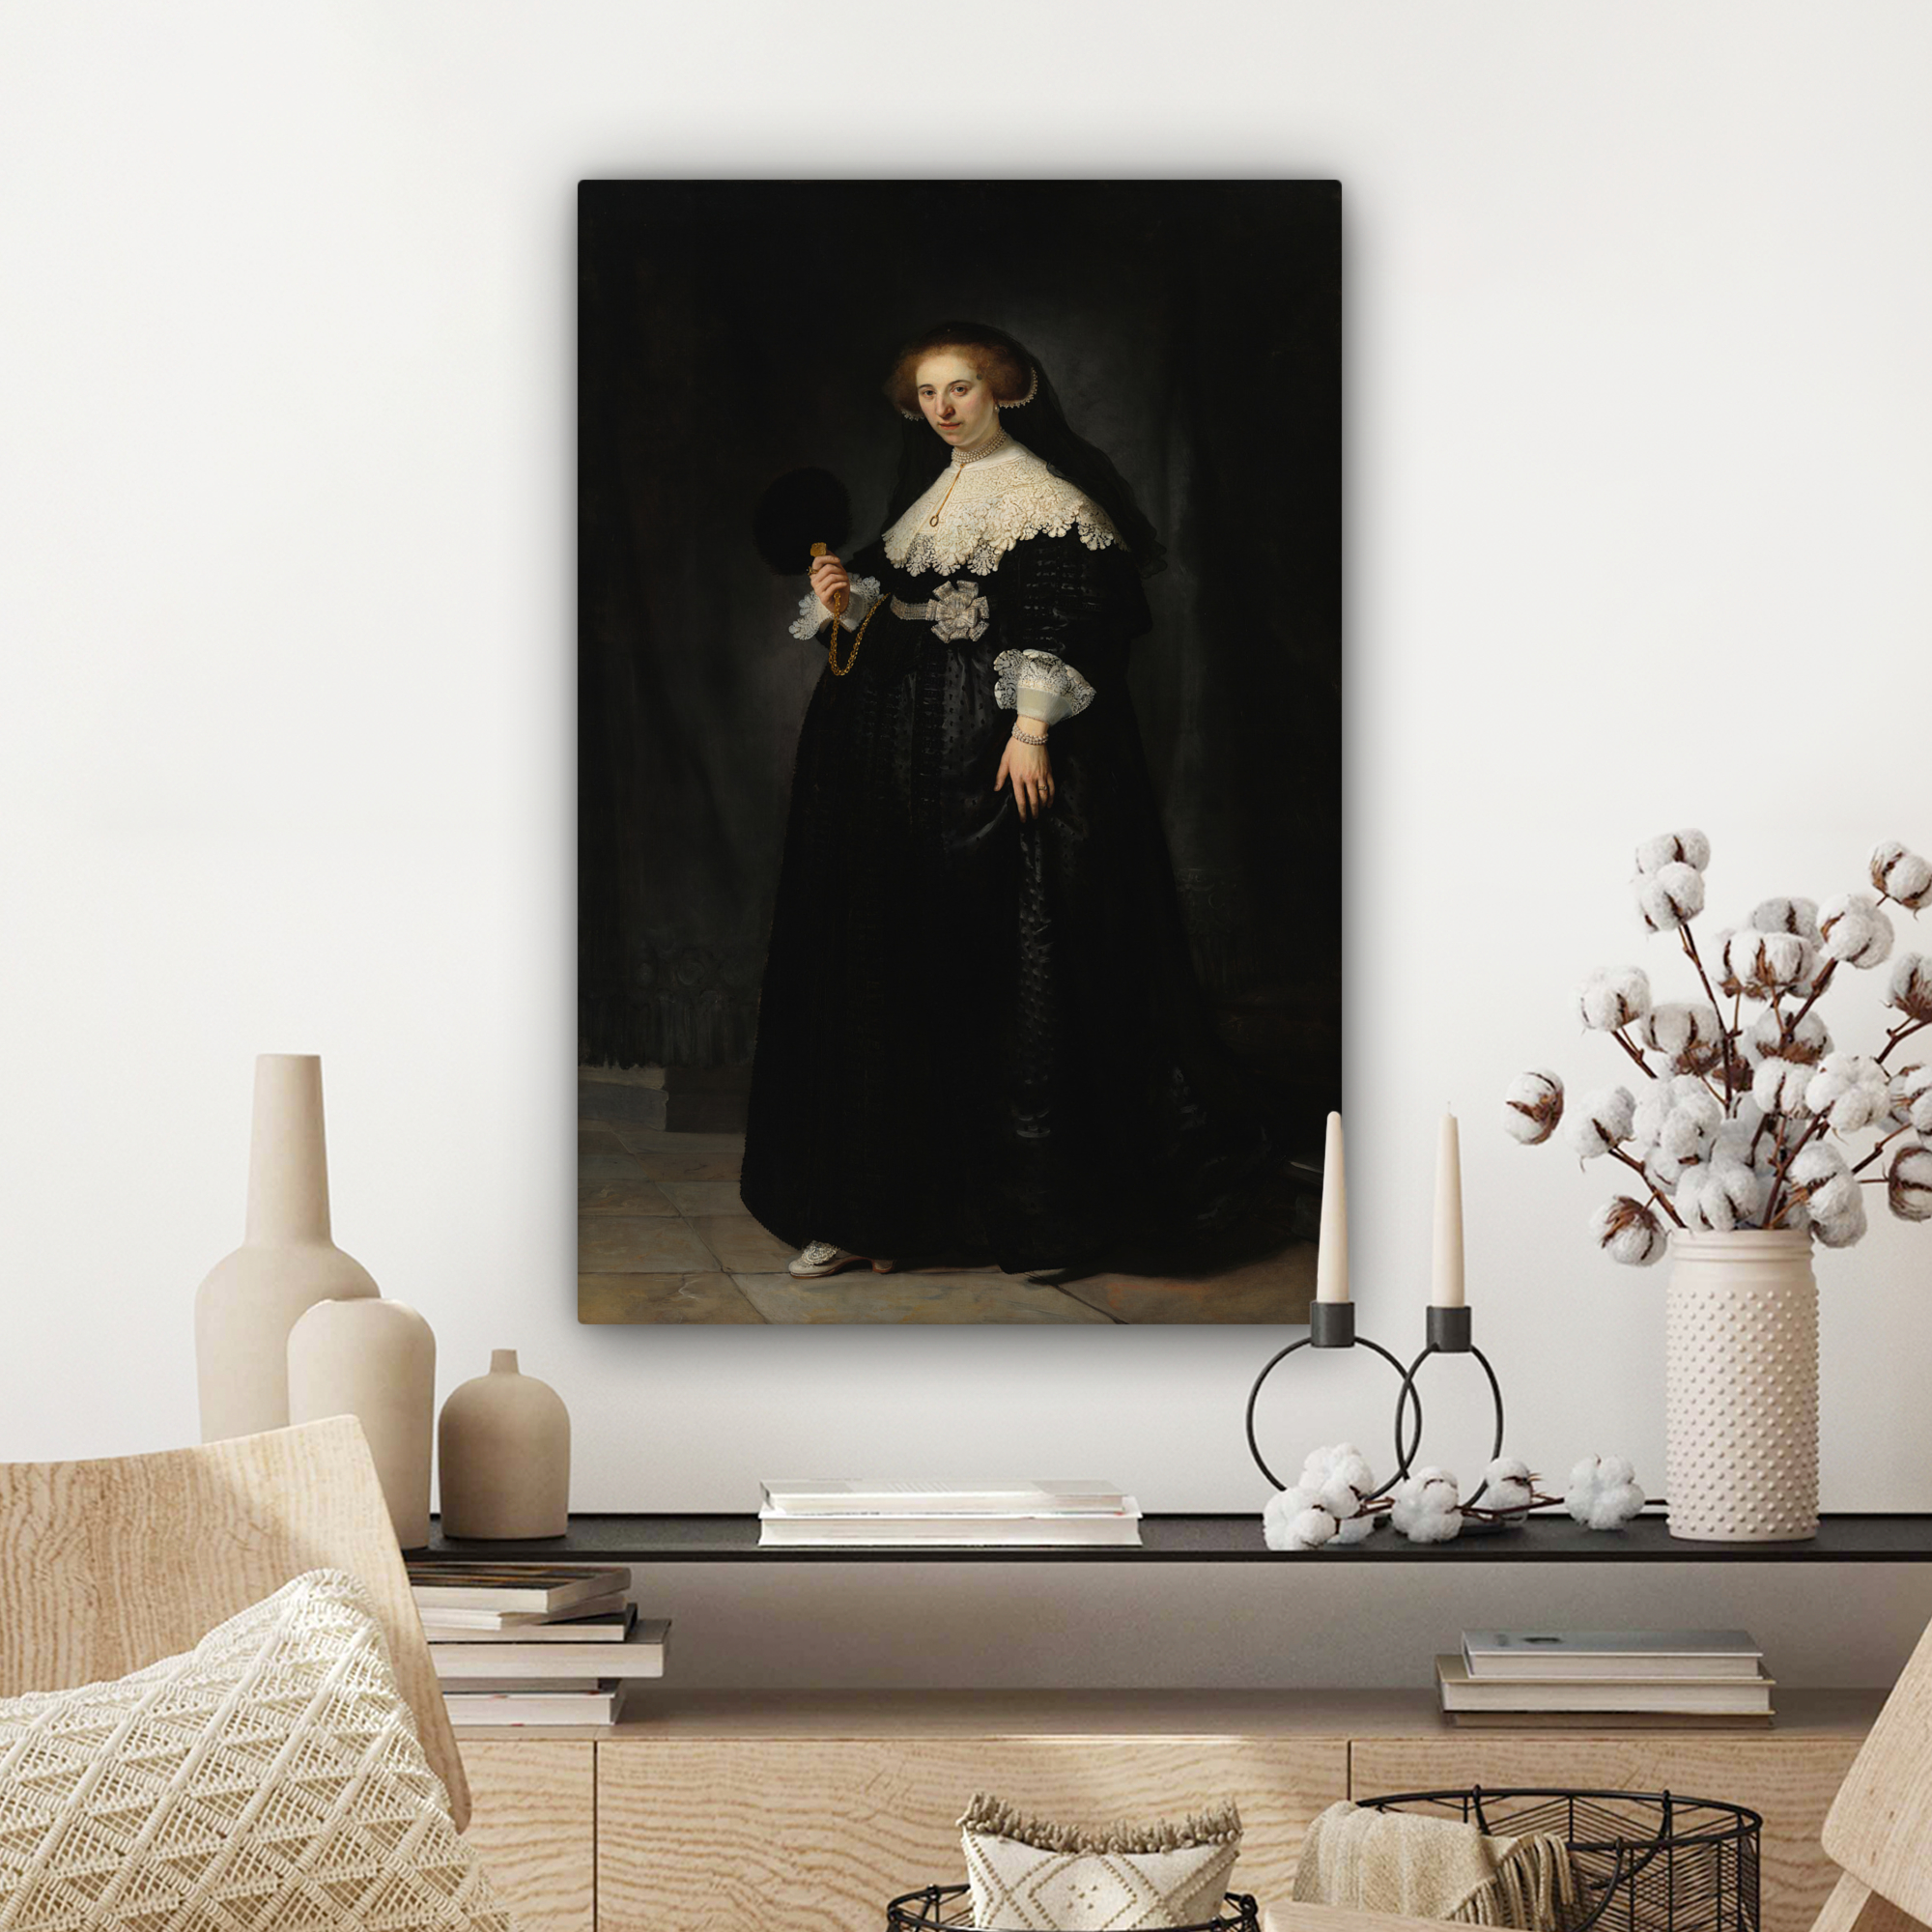 Tableau sur toile - Le portrait de mariage d'Oopjen Coppit - Rembrandt van Rijn-3